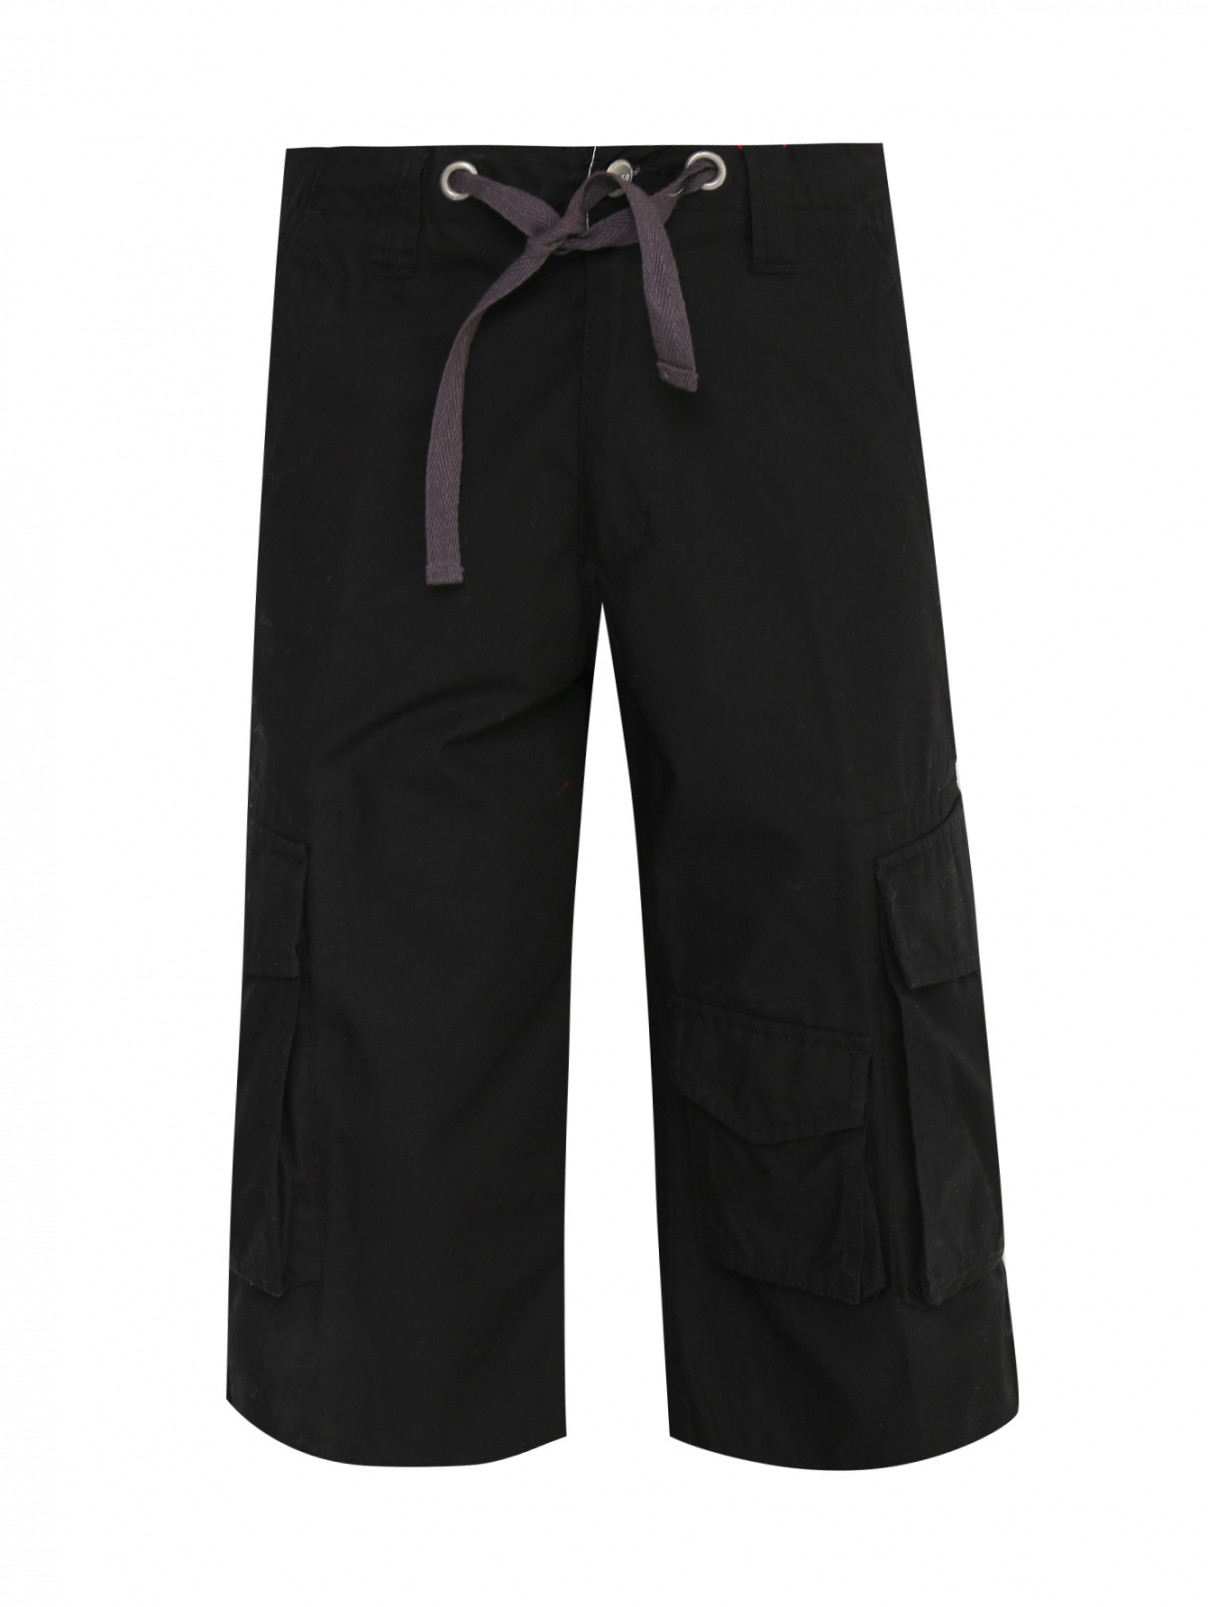 Шорты из хлопка с накладными карманами I Pinco Pallino  –  Общий вид  – Цвет:  Черный